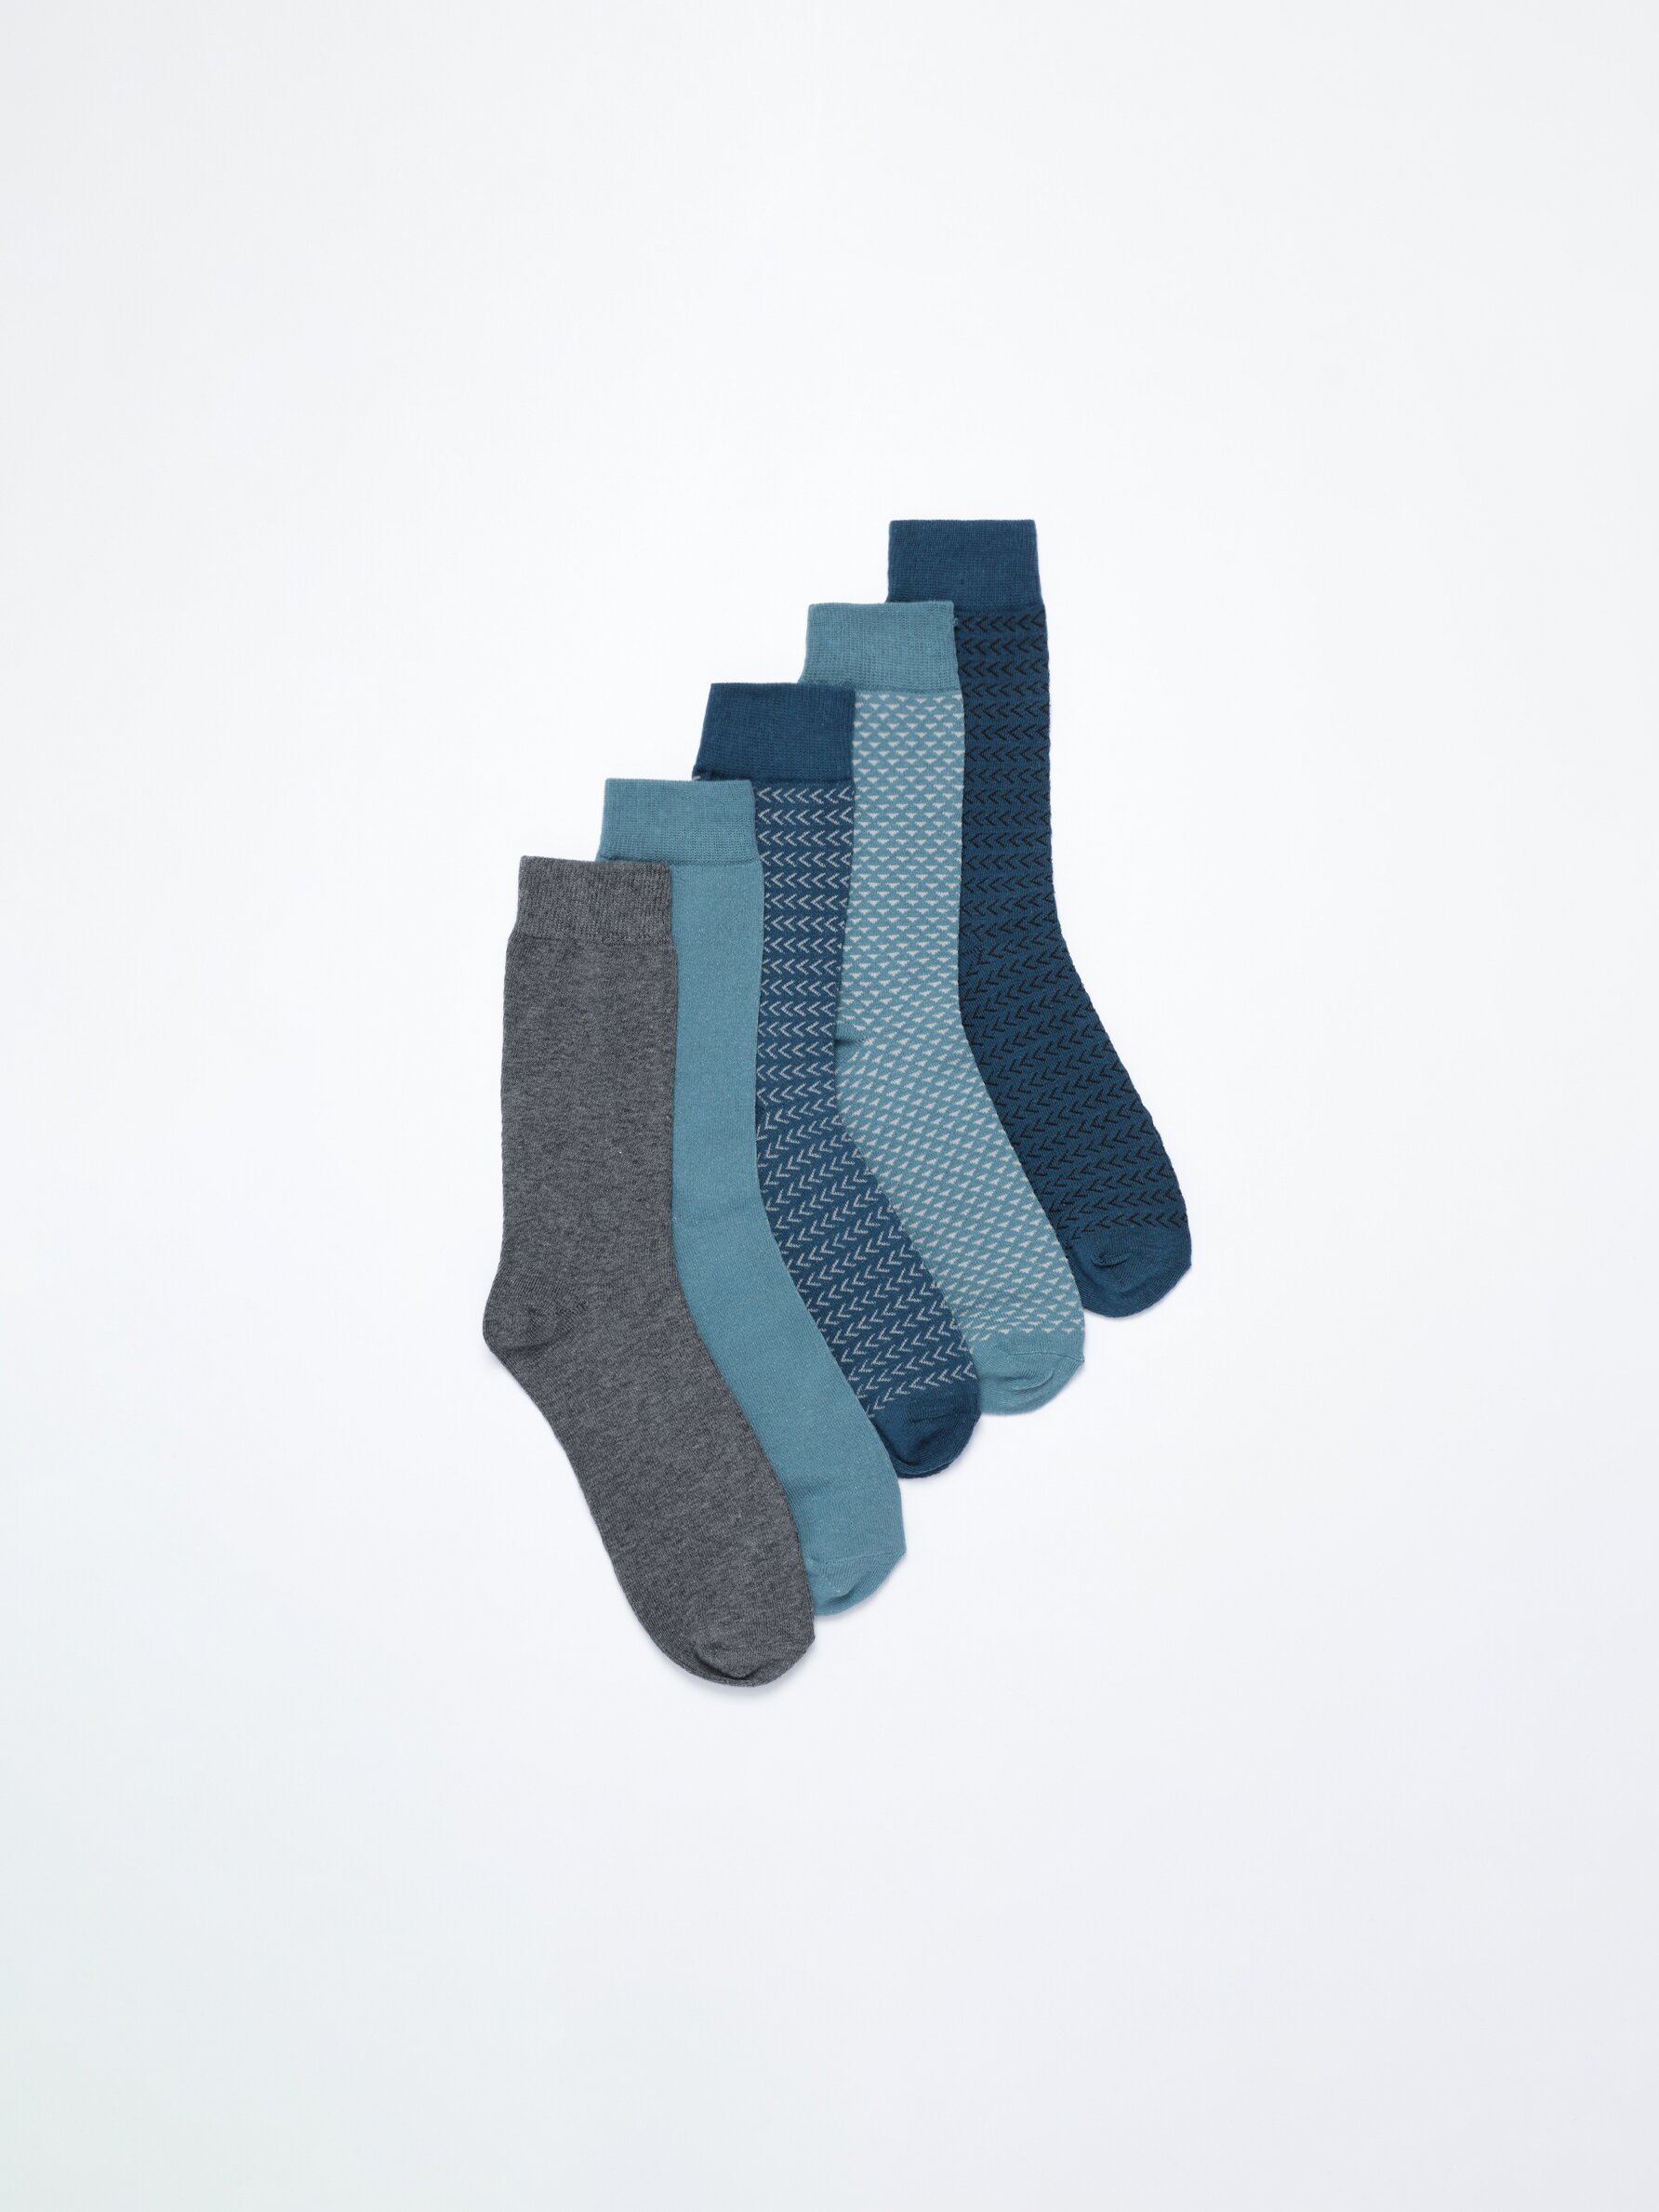 Pack de 5 pares de calcetines largos estampados - Calcetines - ACCESORIOS -  Niña - Niños 